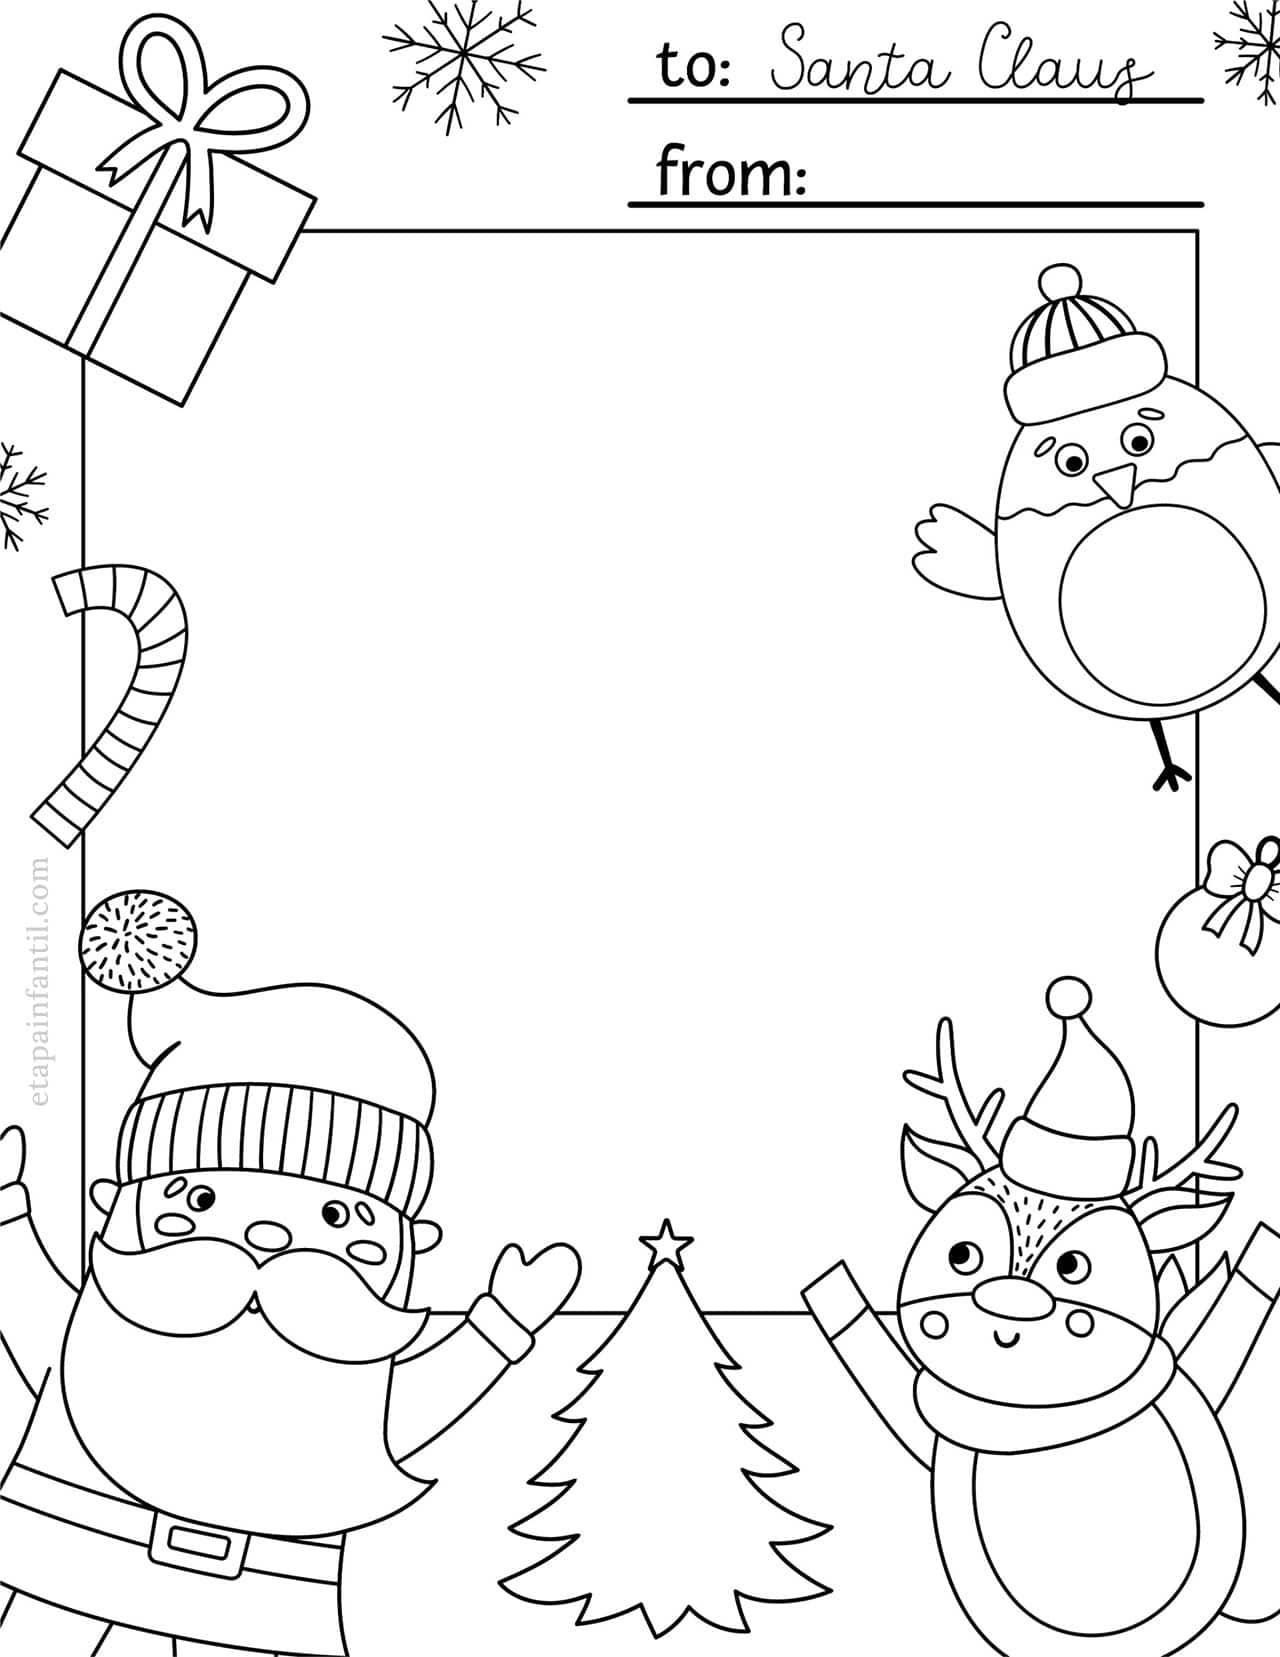 5 modelos de carta para Papá Noel para imprimir y colorear - Etapa Infantil